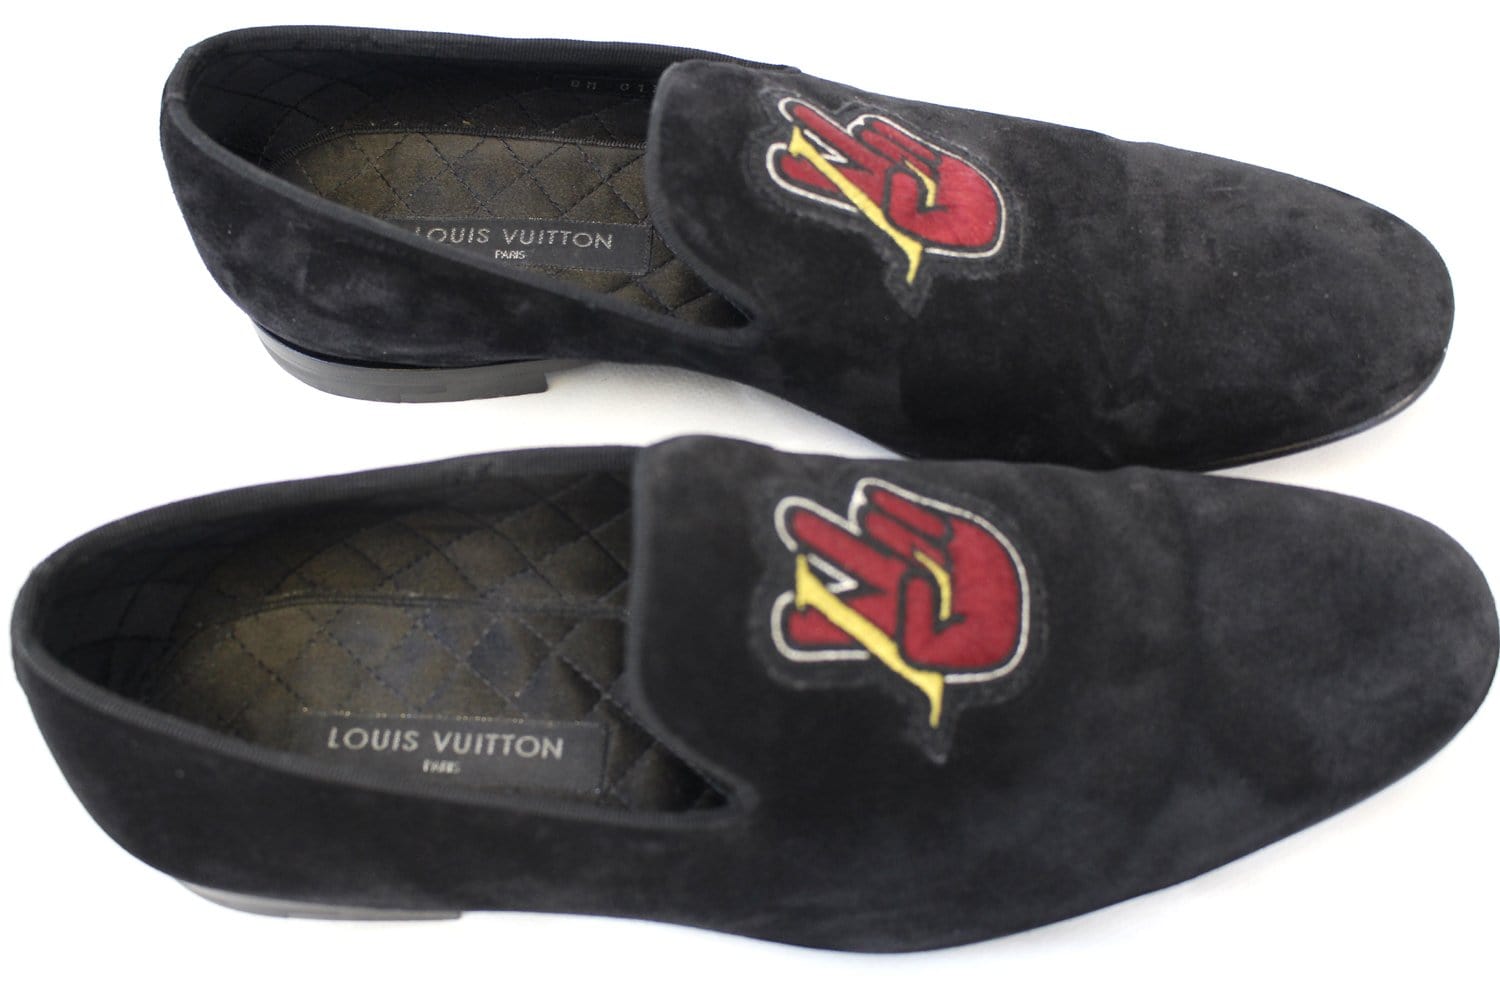 Louis Vuitton - Loafers - Size: Shoes / EU 36 - Catawiki